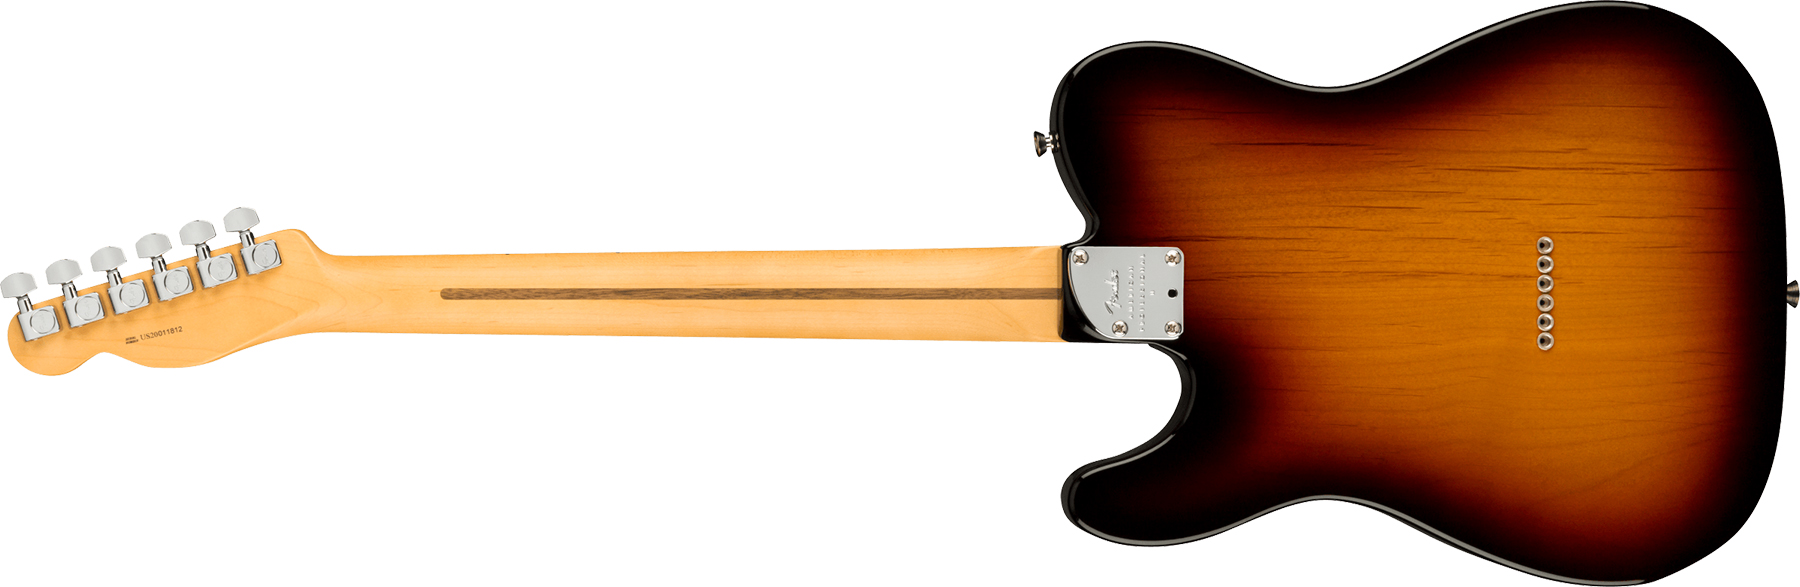 Fender Tele American Professional Ii Usa Rw - 3-color Sunburst - Guitare Électrique Forme Tel - Variation 1